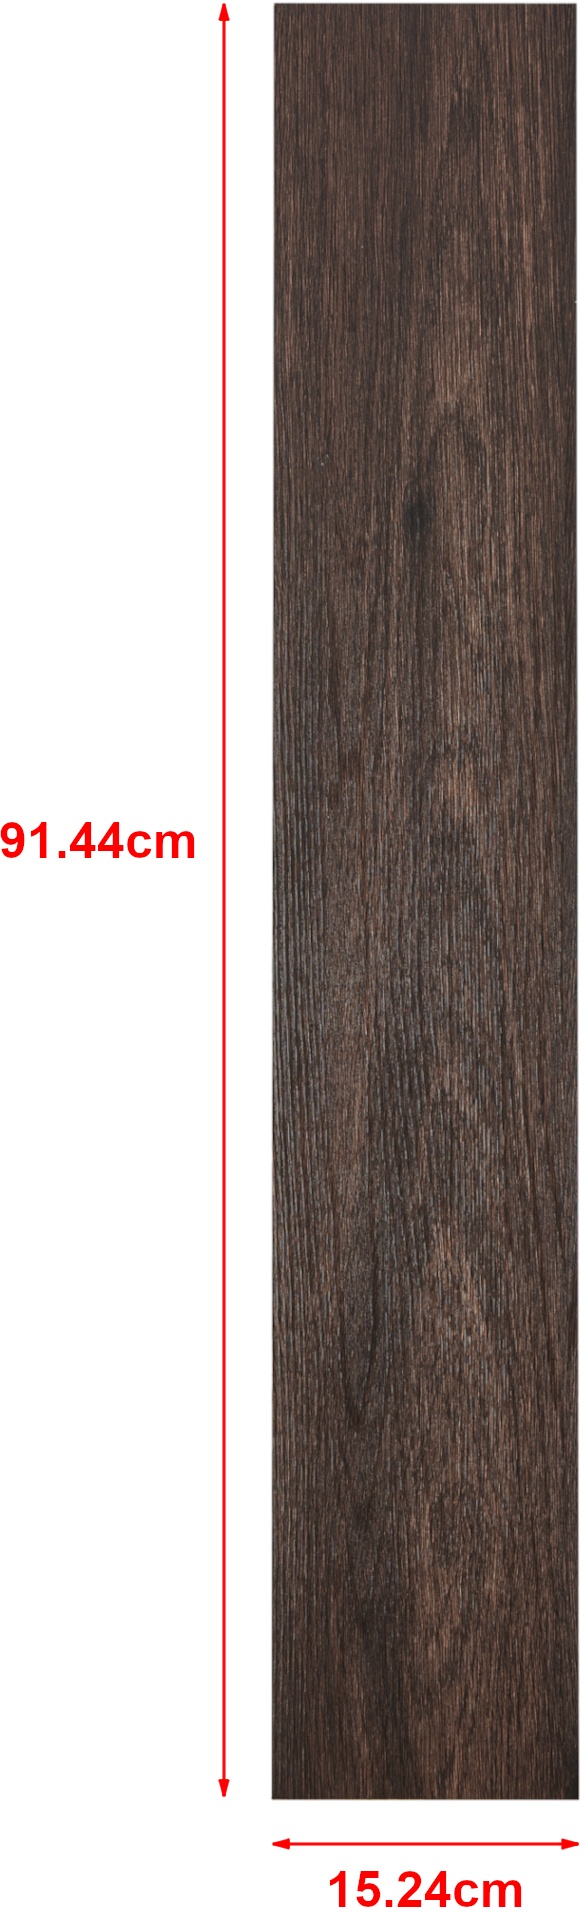 Vinyl Laminat Vanola selbstklebend 5,85m2 Dark Wood Wenge